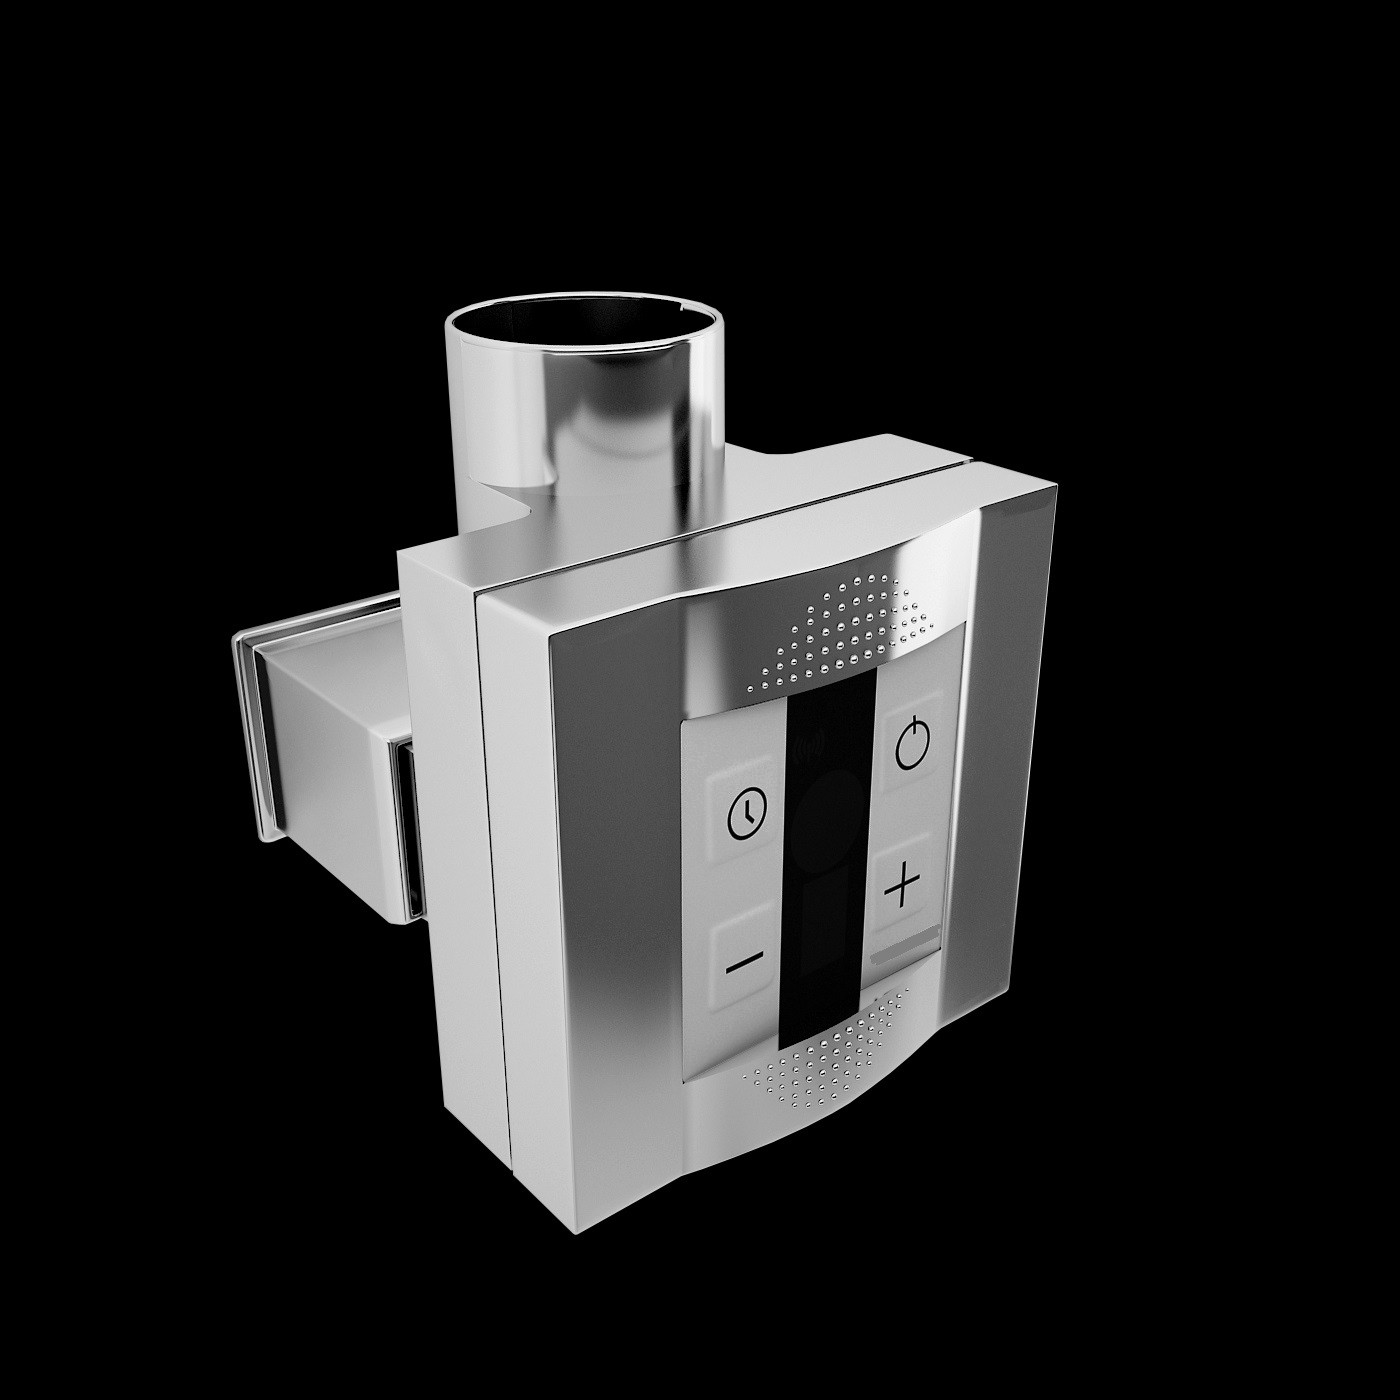 Elektrische elementen voor inbouw radiatoren. Designradiator.nl levert de mooiste designradiatoren voor badkamer, woonkamer, keuken, slaapkamer en hal.